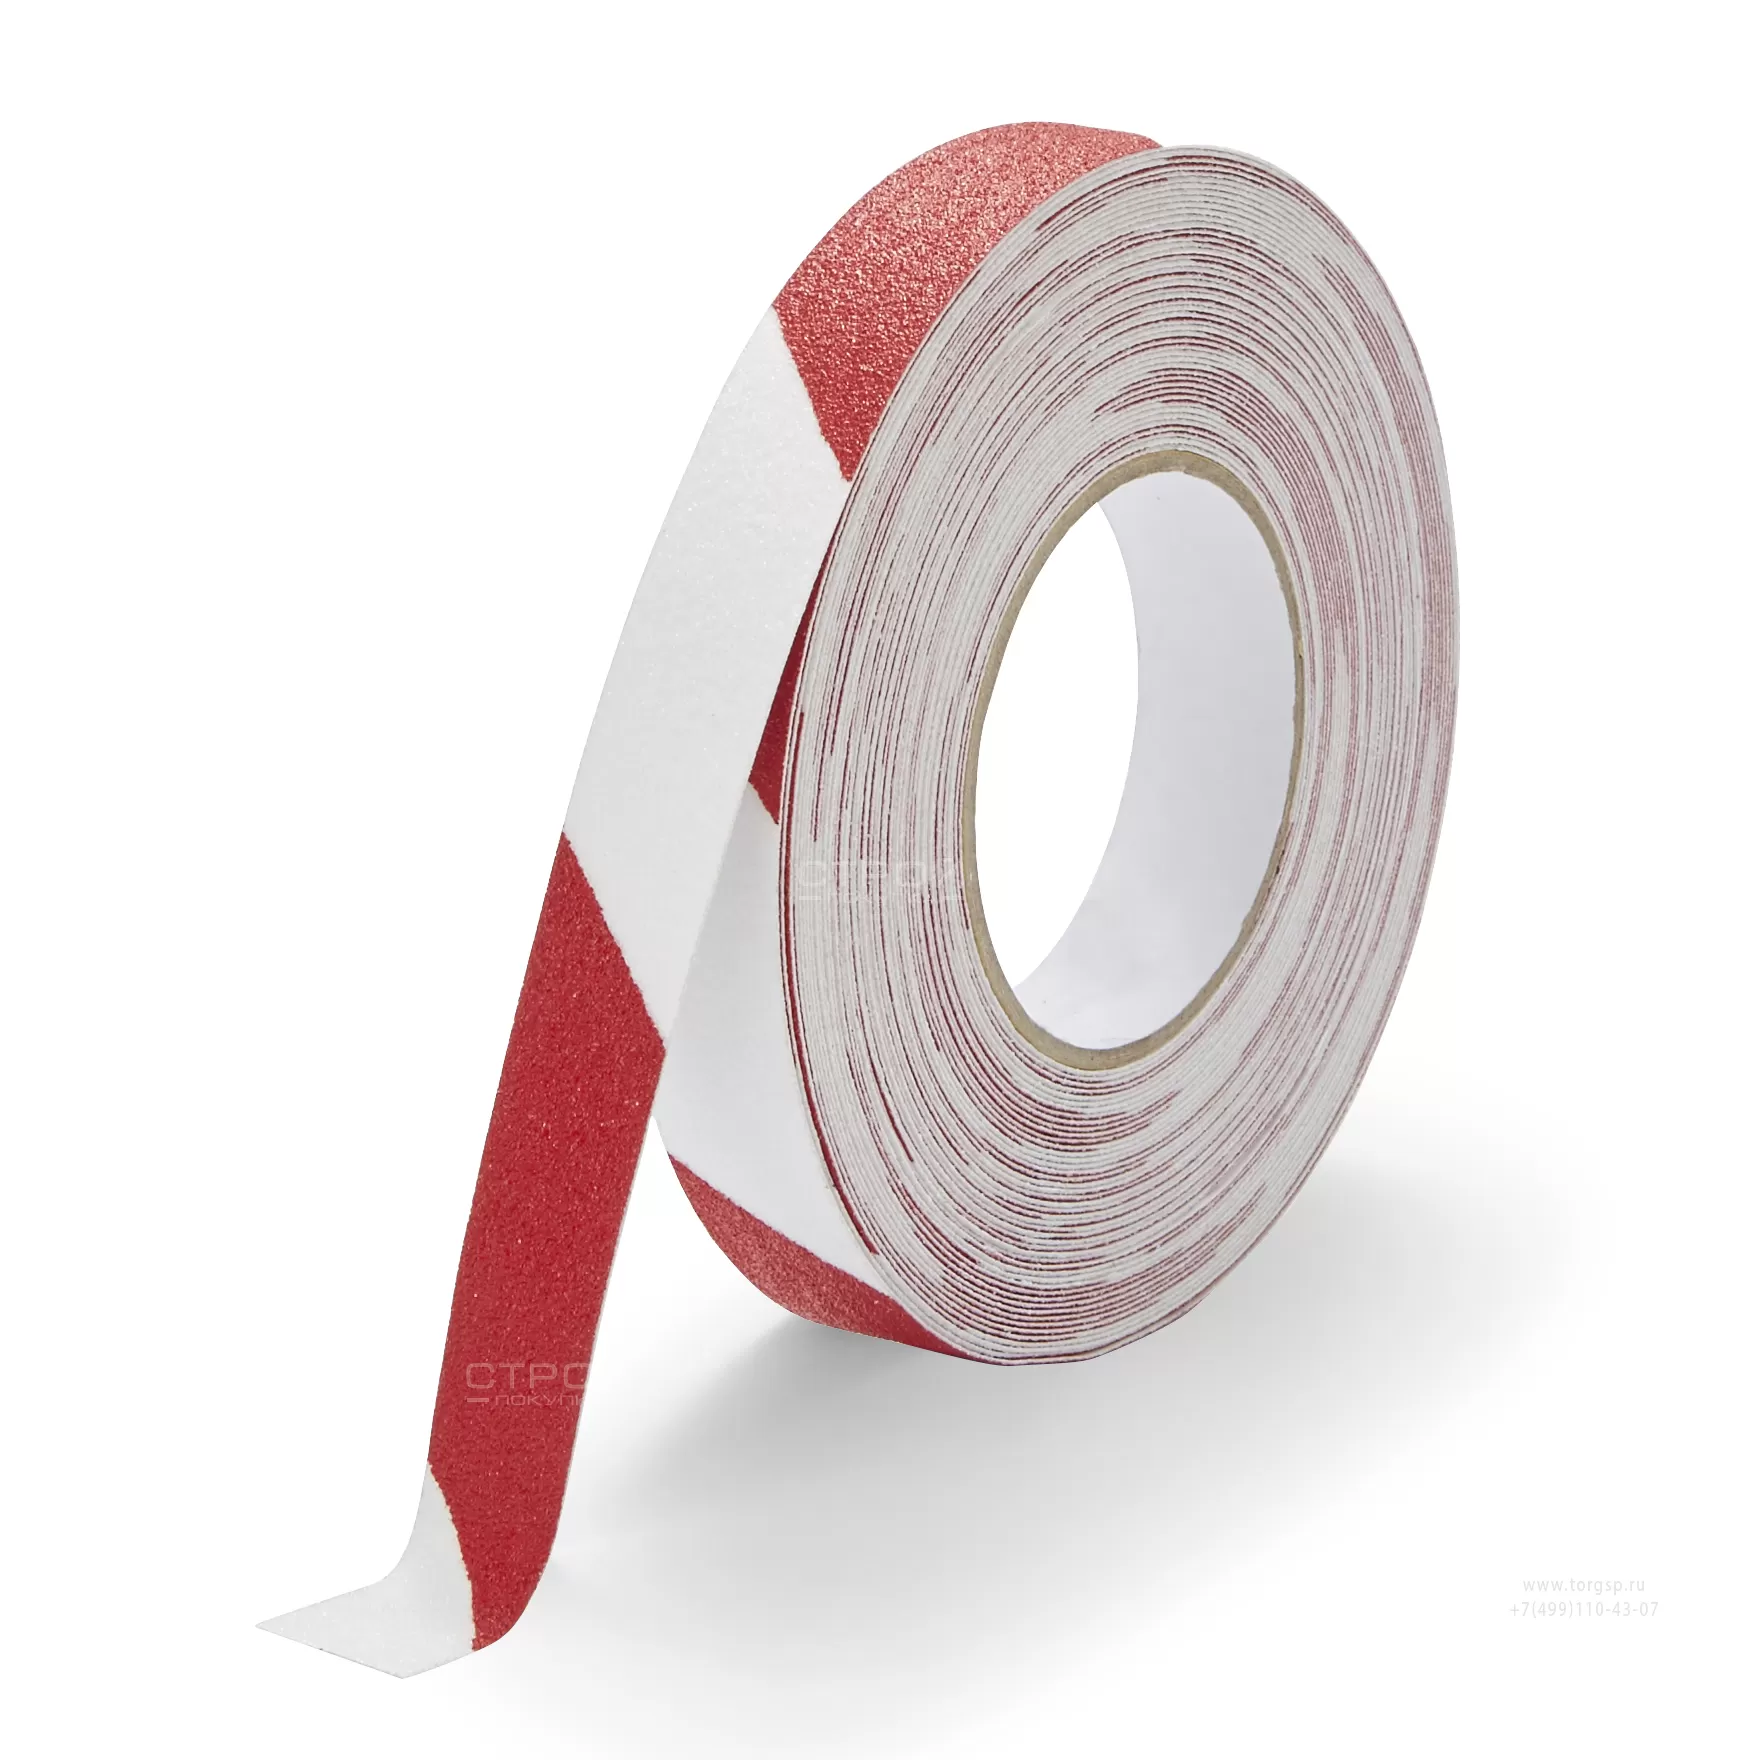 Лента Heskins самоклеющаяся красно-белая с абразивной поверхностью против скольжения, ширина 2,5 см